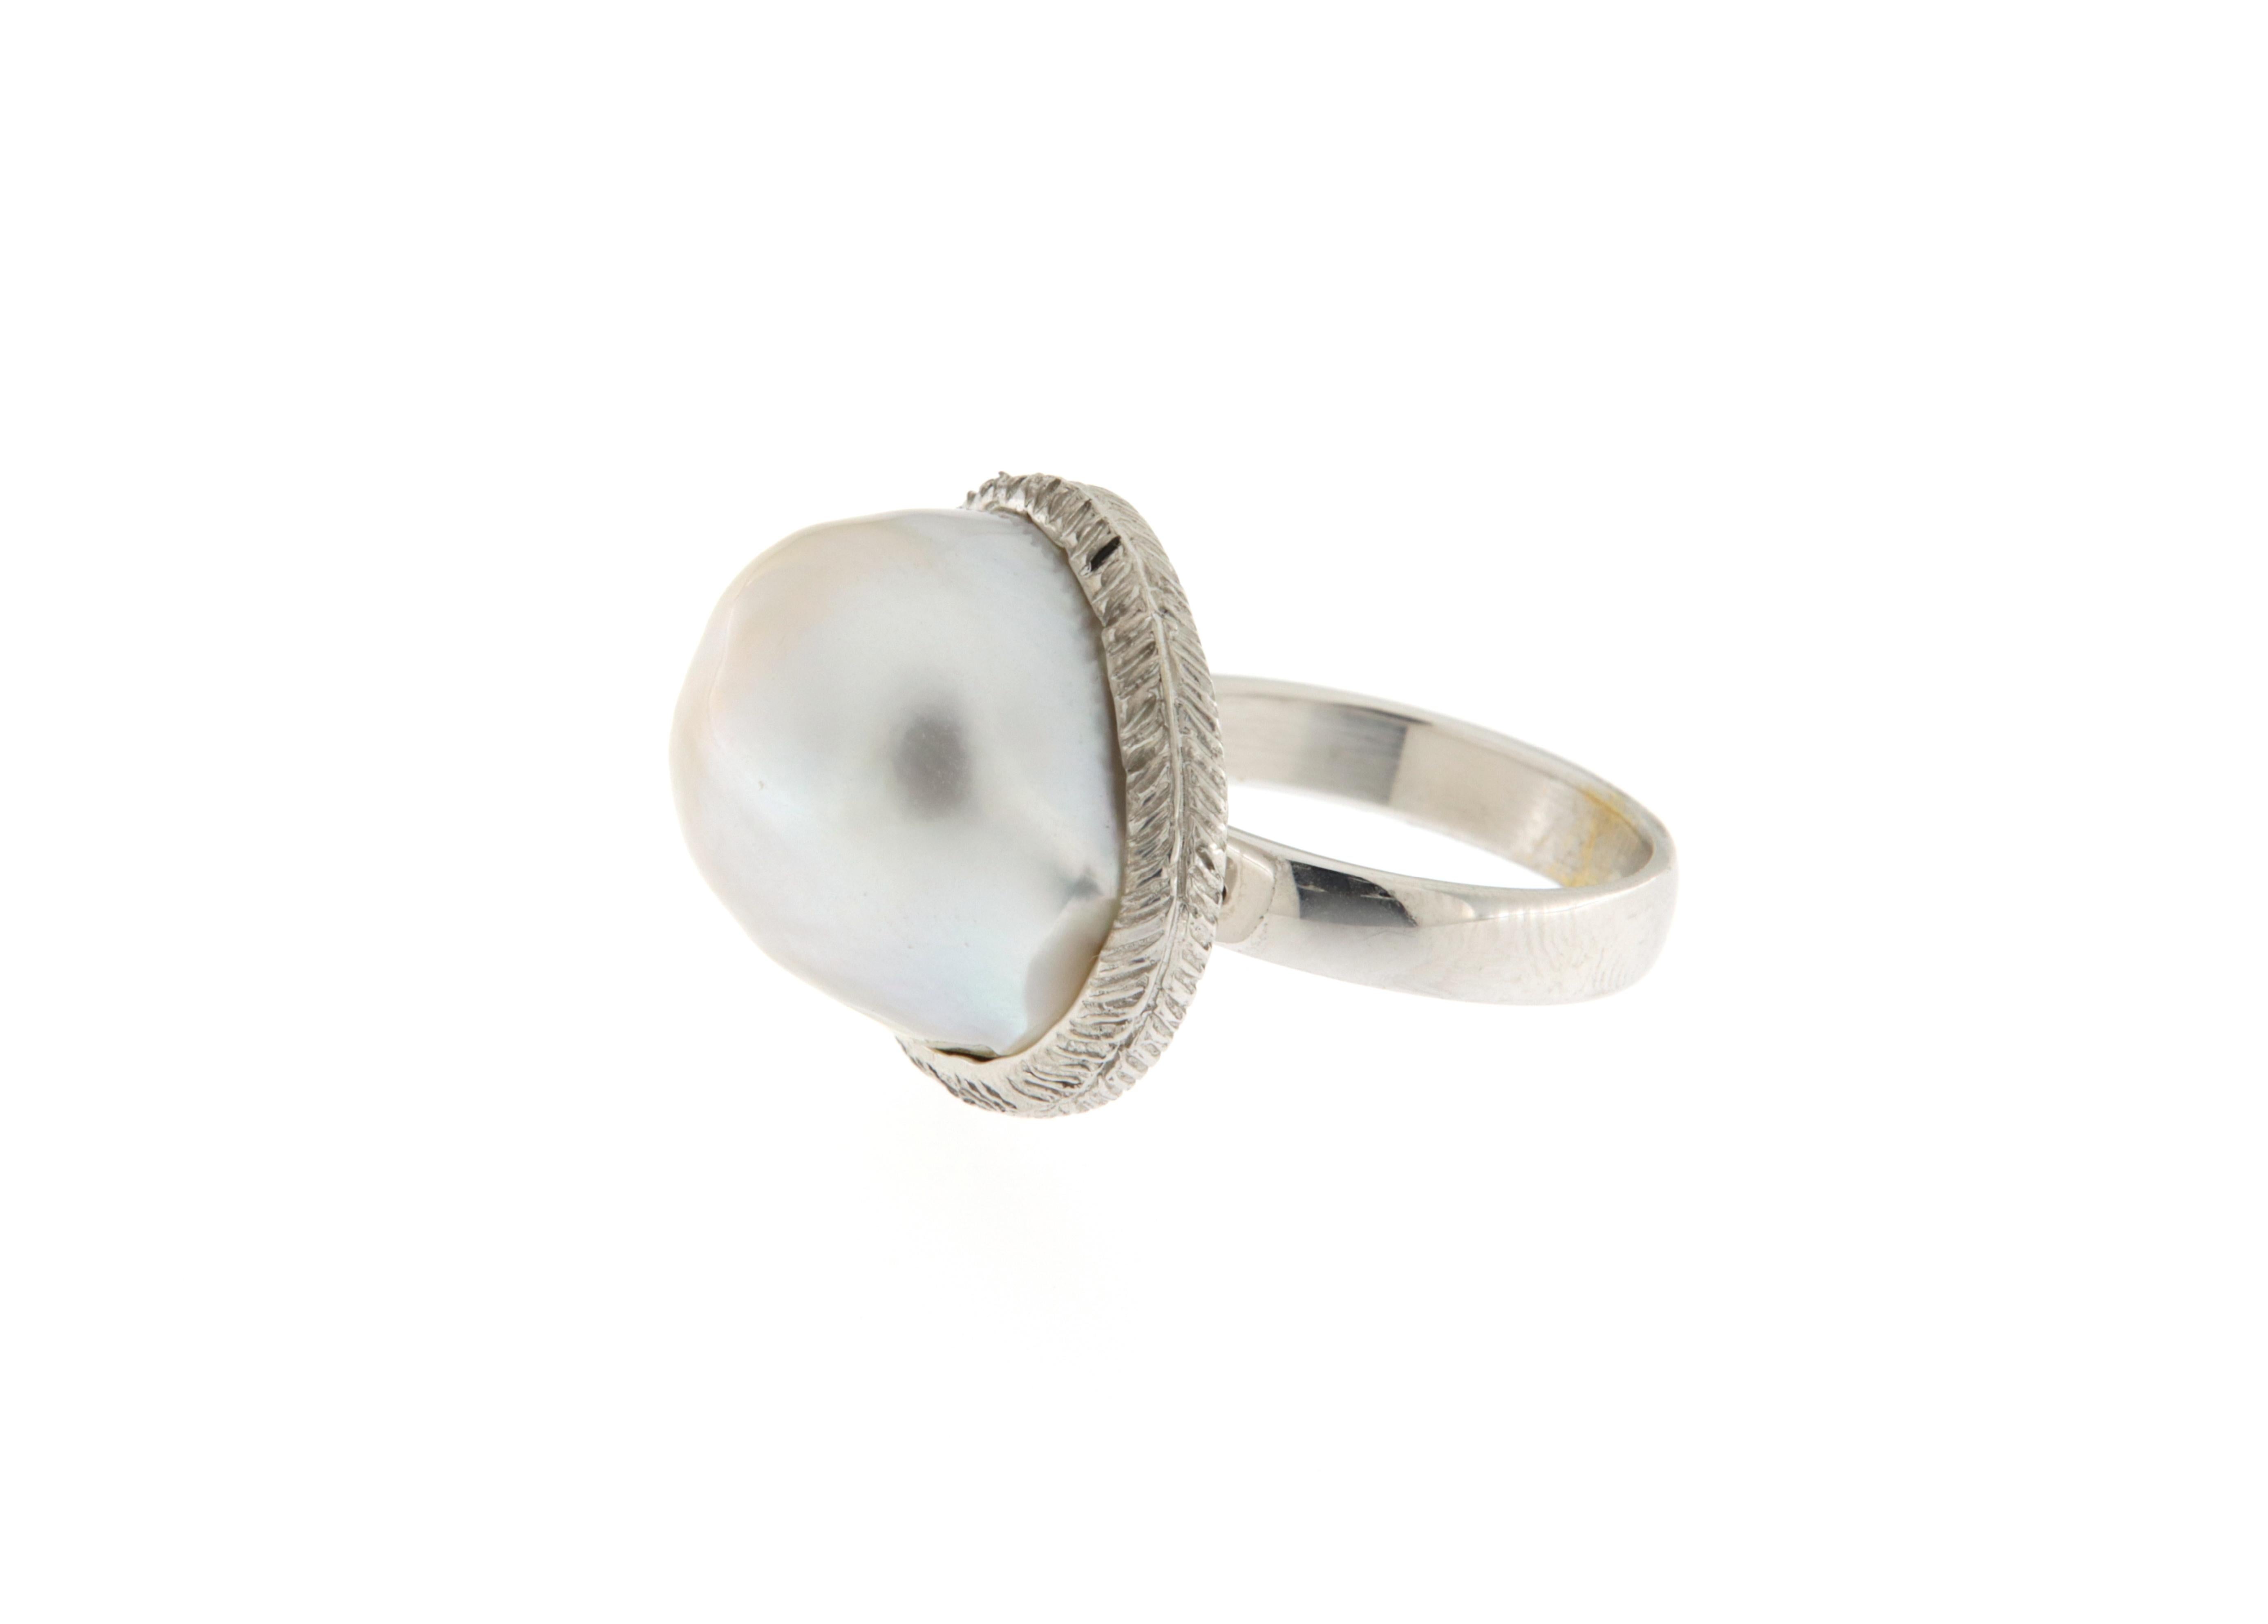 Questo anello in oro bianco nasce dalla particolare forma della perla australiana, sulla quale è stato progettato e realizzato l'anello, proprio per esaltare la bellezza naturale della perla.